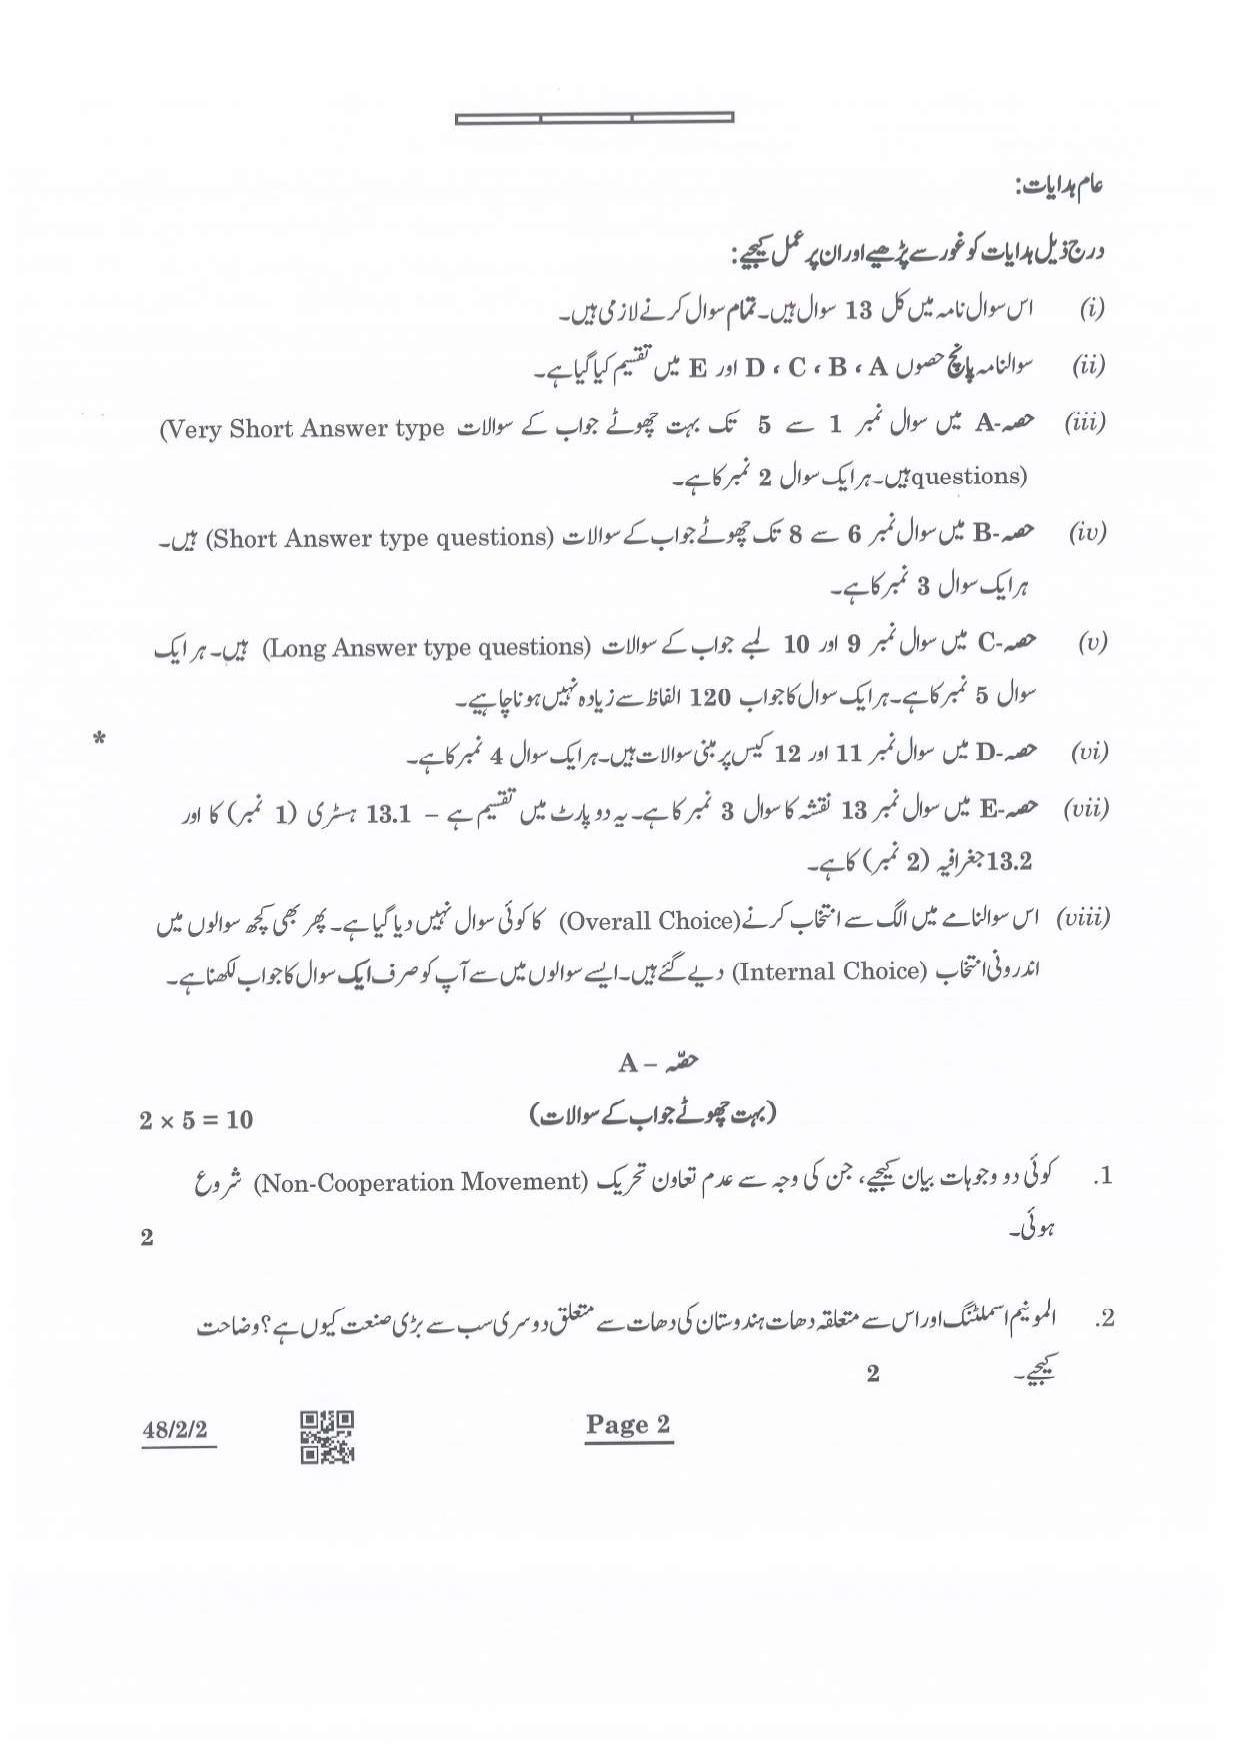 CBSE Class 10 48-2-2 Social Science Urdu Version 2022 Question Paper - Page 2